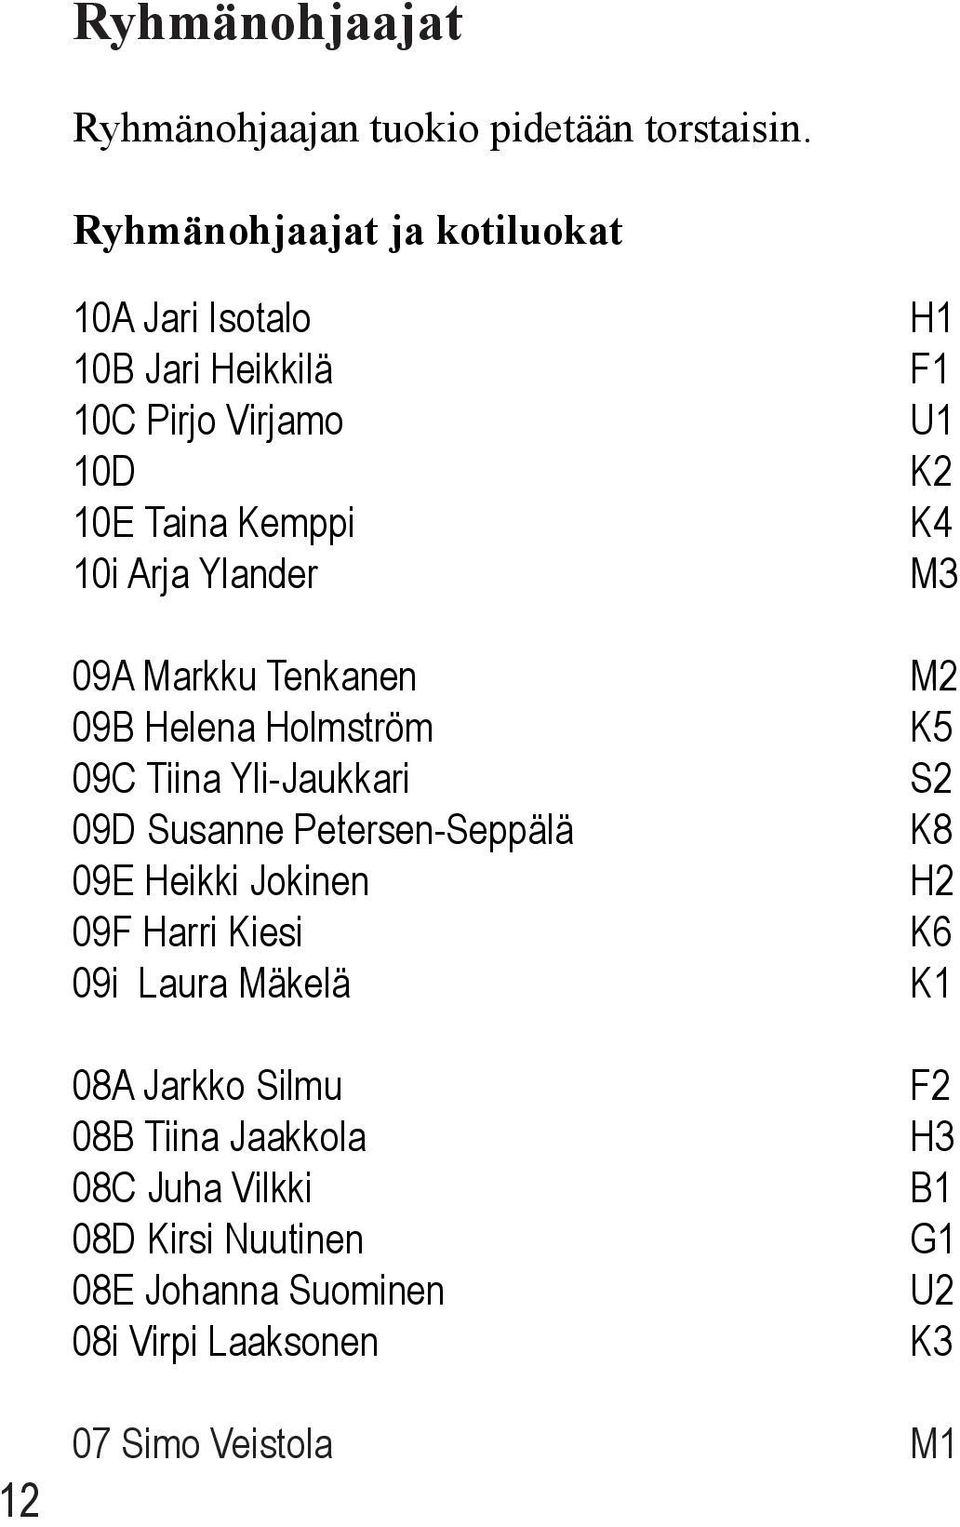 Markku Tenkanen 09B Helena Holmström 09C Tiina Yli-Jaukkari 09D Susanne Petersen-Seppälä 09E Heikki Jokinen 09F Harri Kiesi 09i